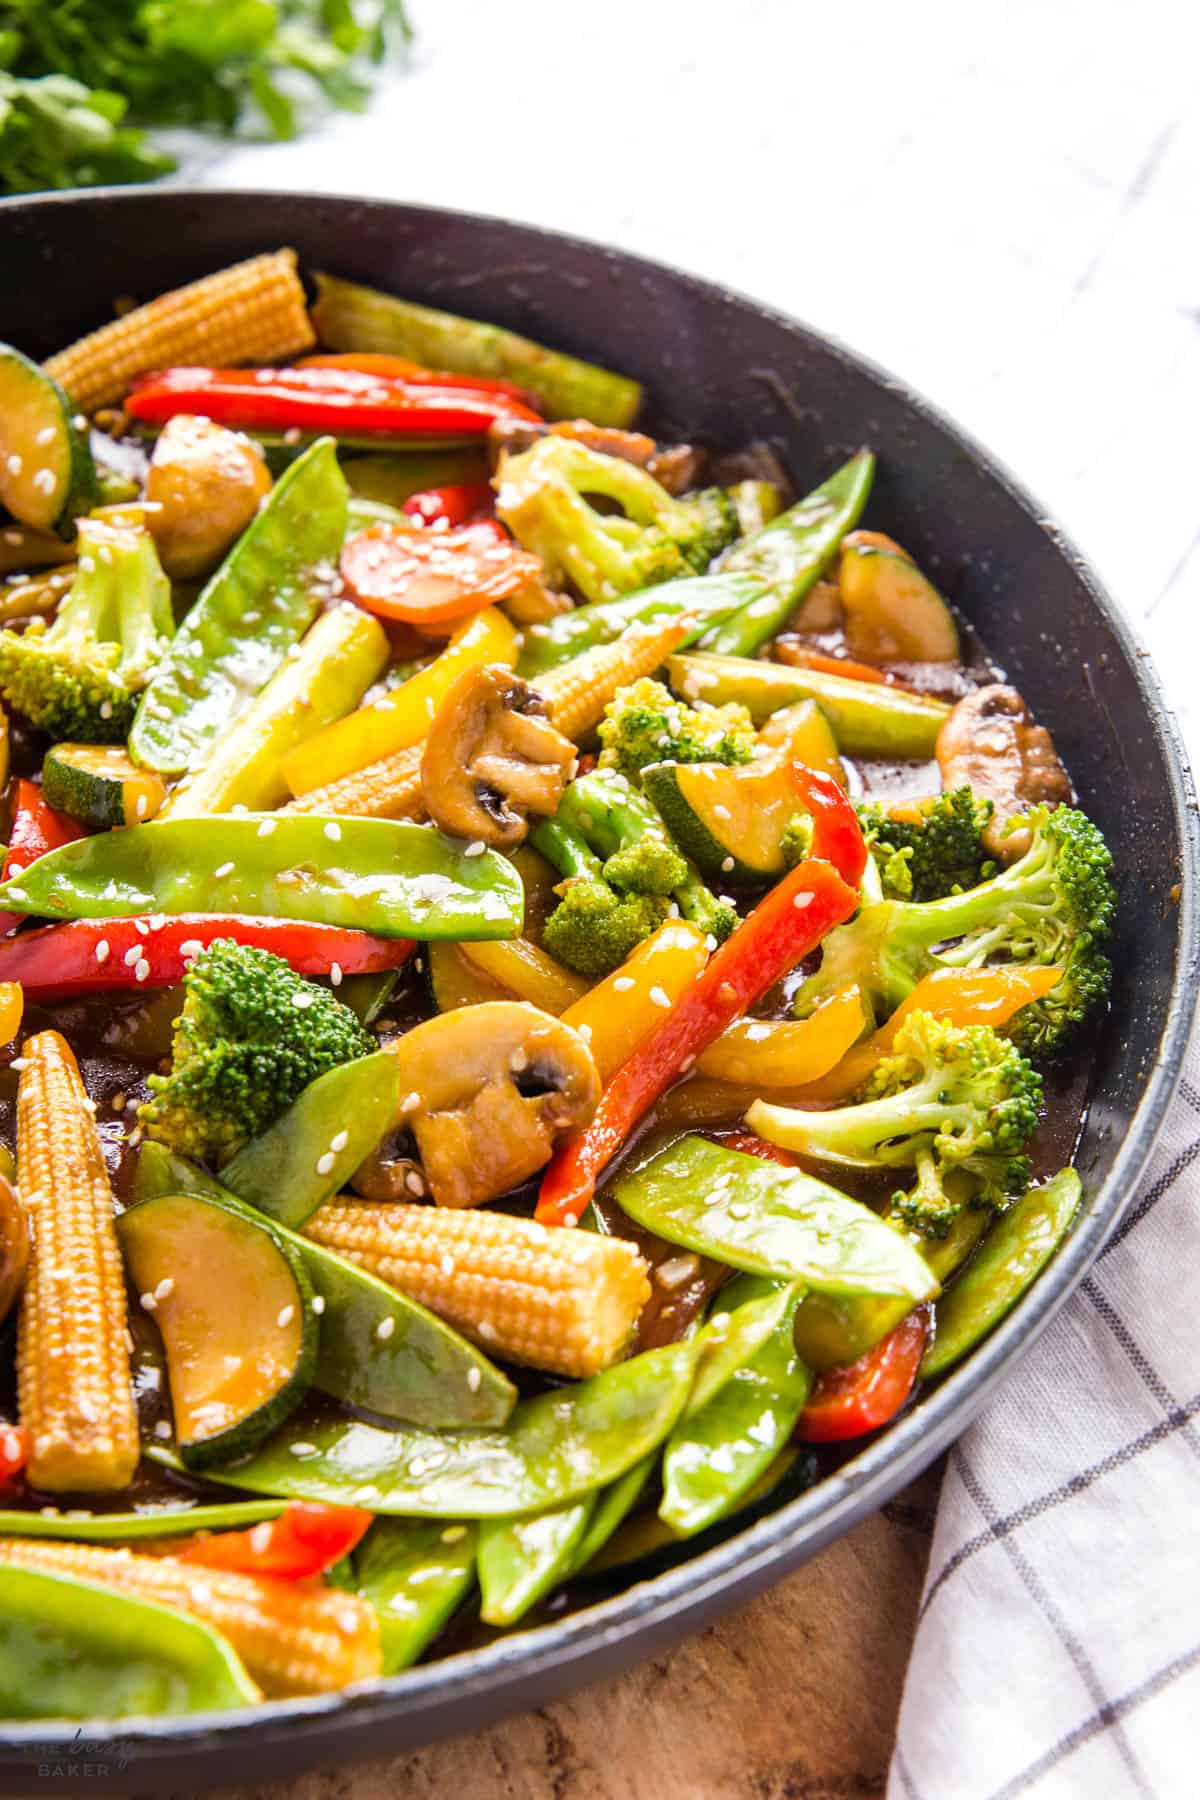 skillet of stir fry vegetables